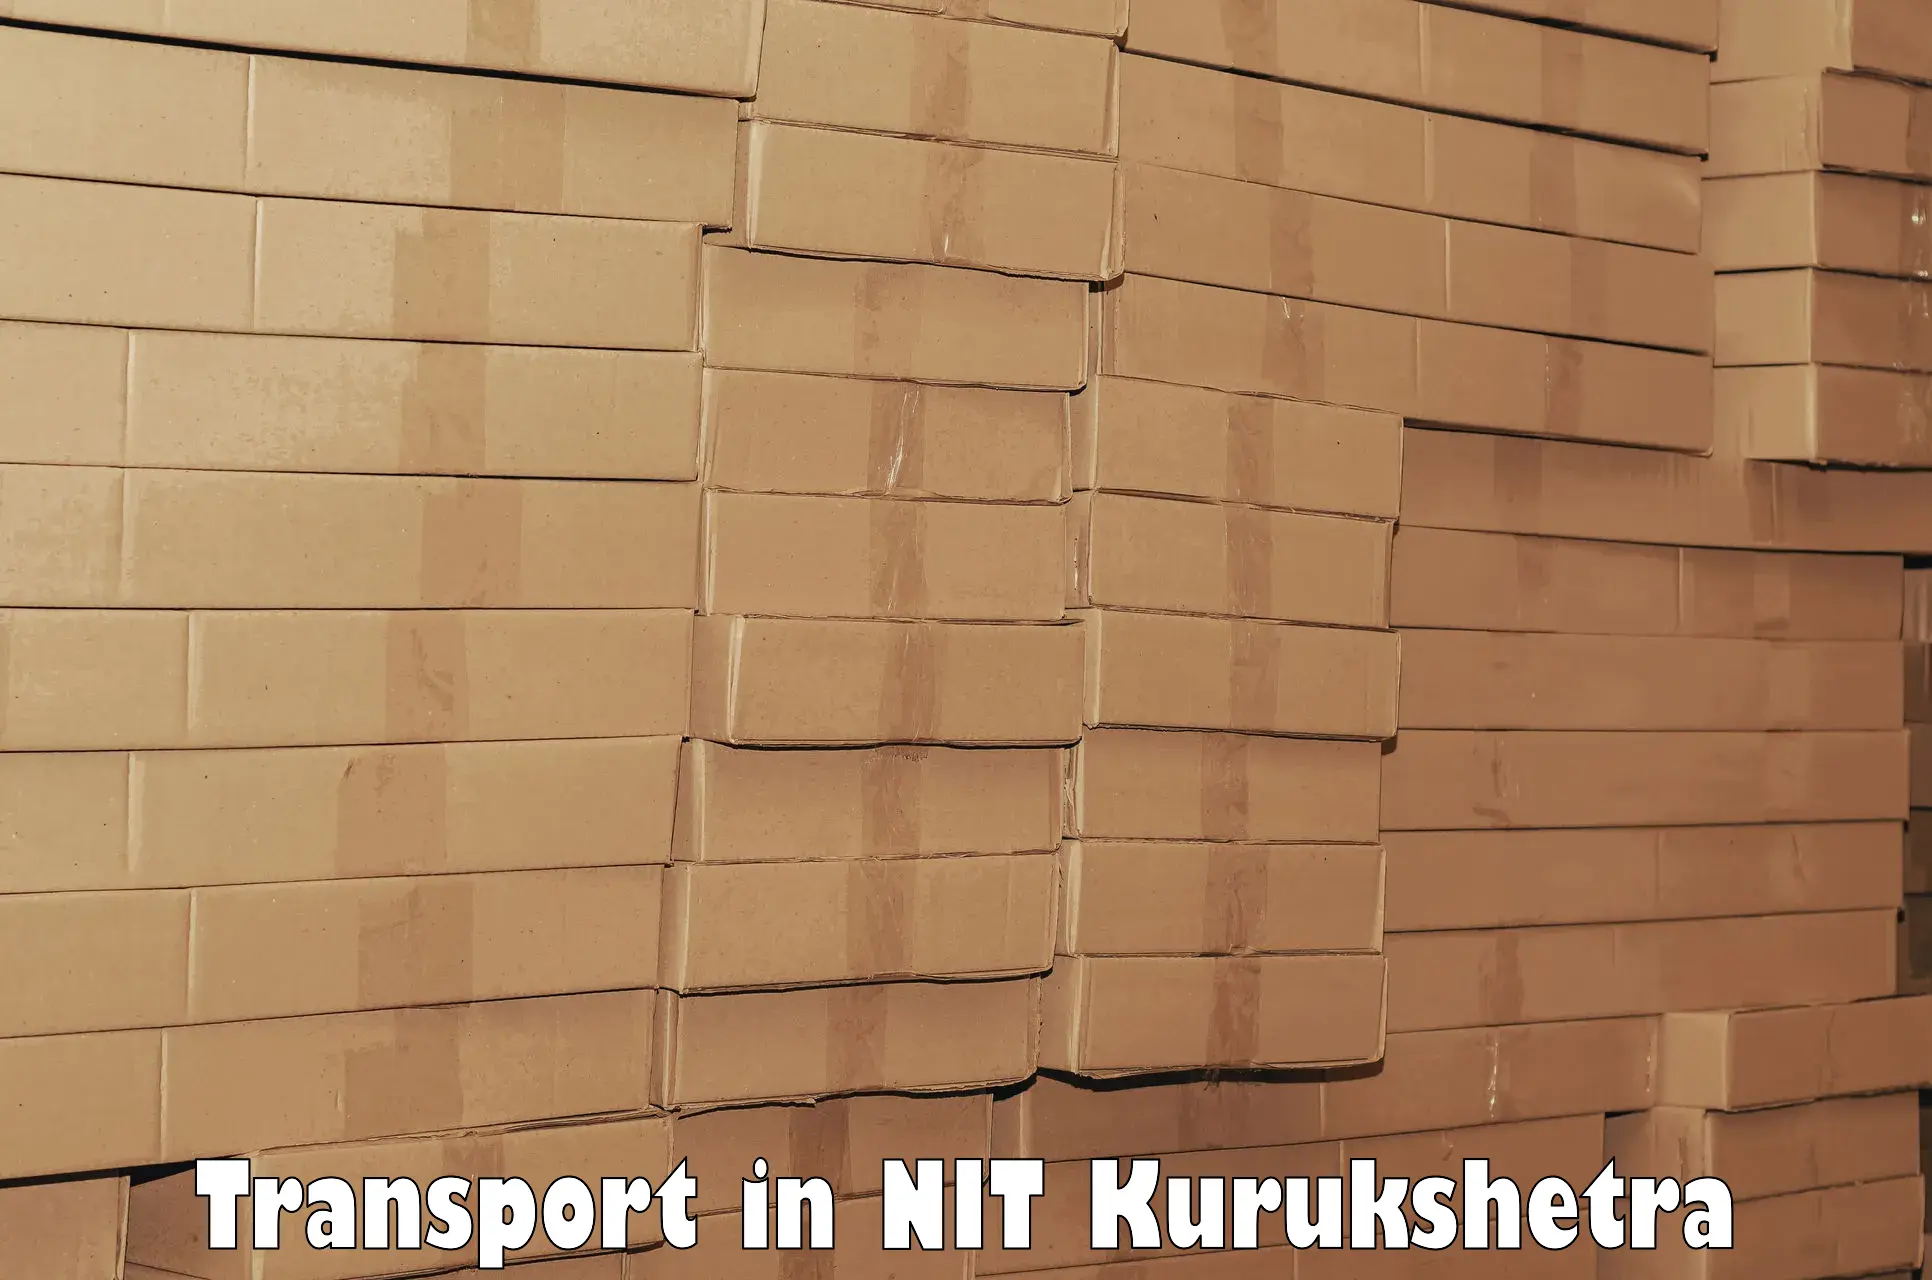 Online transport in NIT Kurukshetra